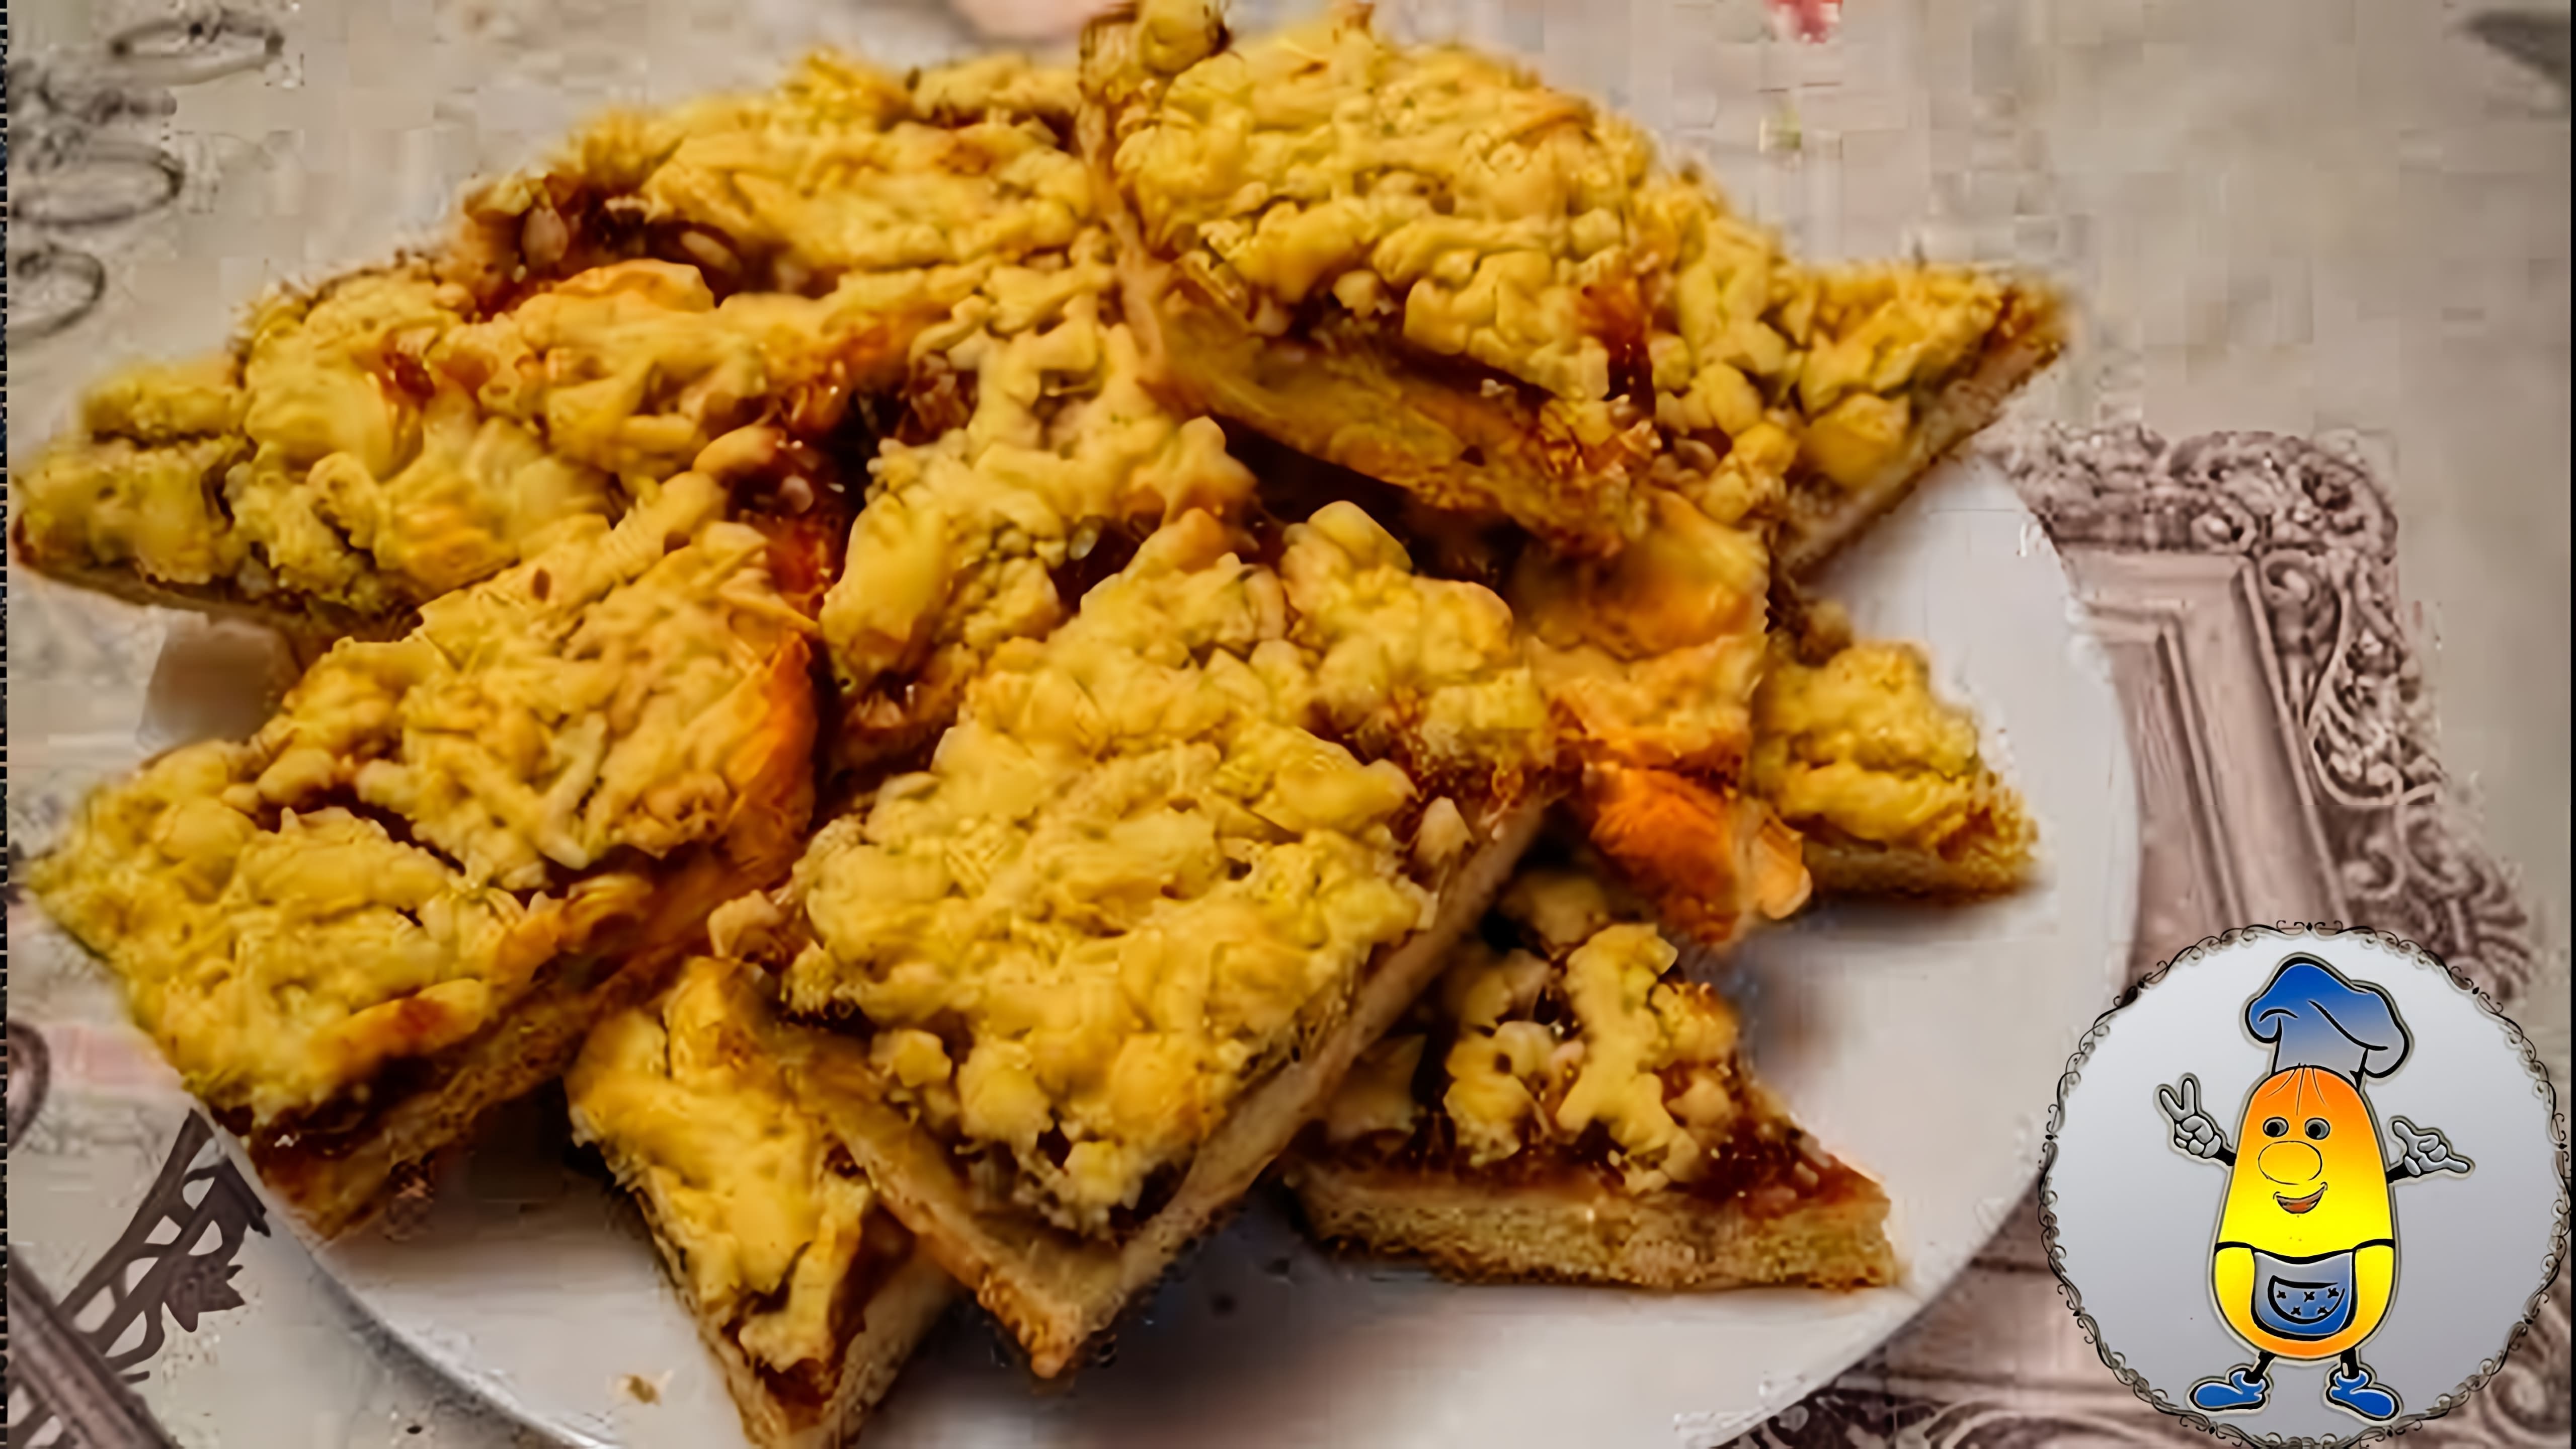 В этом видео демонстрируется рецепт приготовления тертого пирога с вареньем и орешками